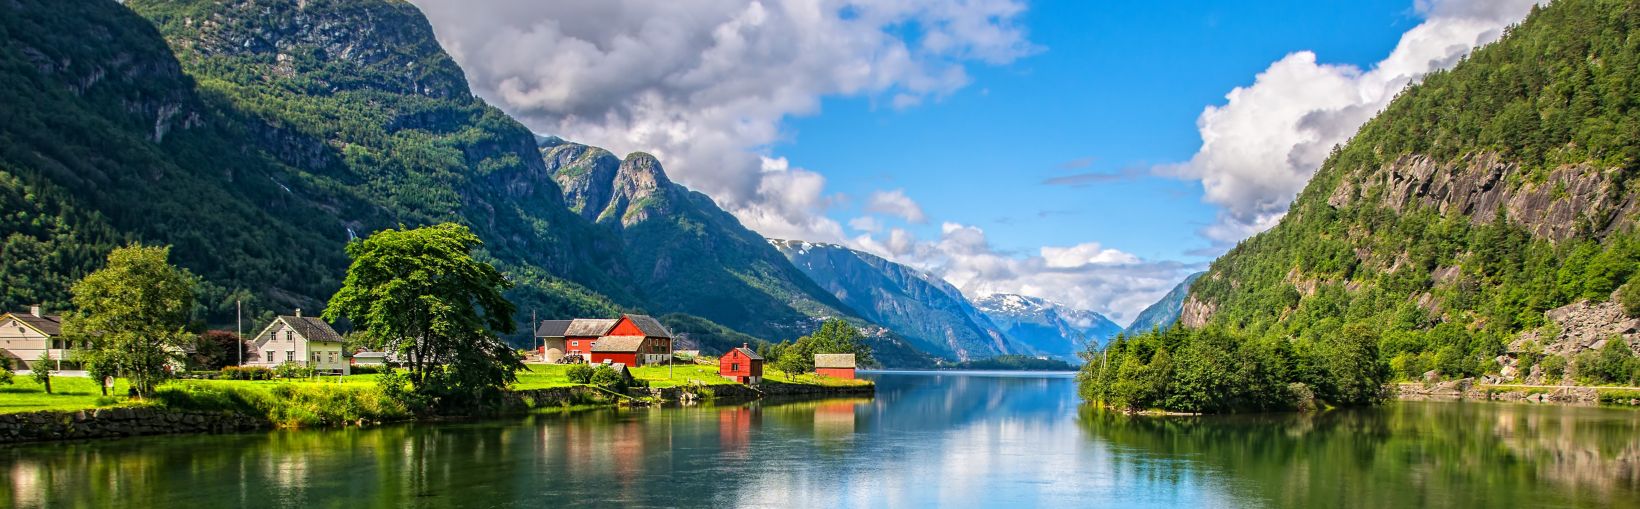 Increíble vista a la naturaleza con fiordos y montañas. Un hermoso reflejo. Ubicación: Montañas Escandinavas, Noruega. Imagen artística. El mundo de la belleza. La sensación de libertad total